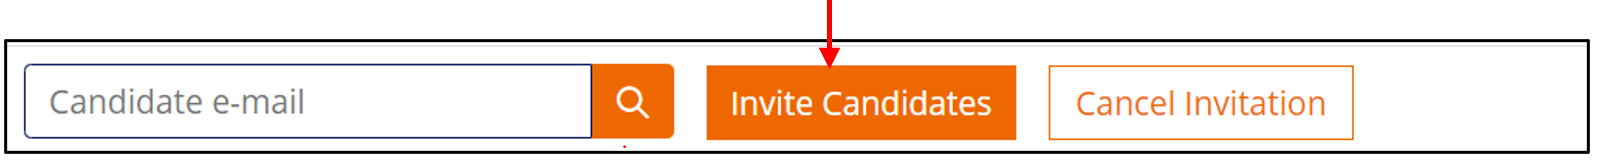 arrow_invitecandidate